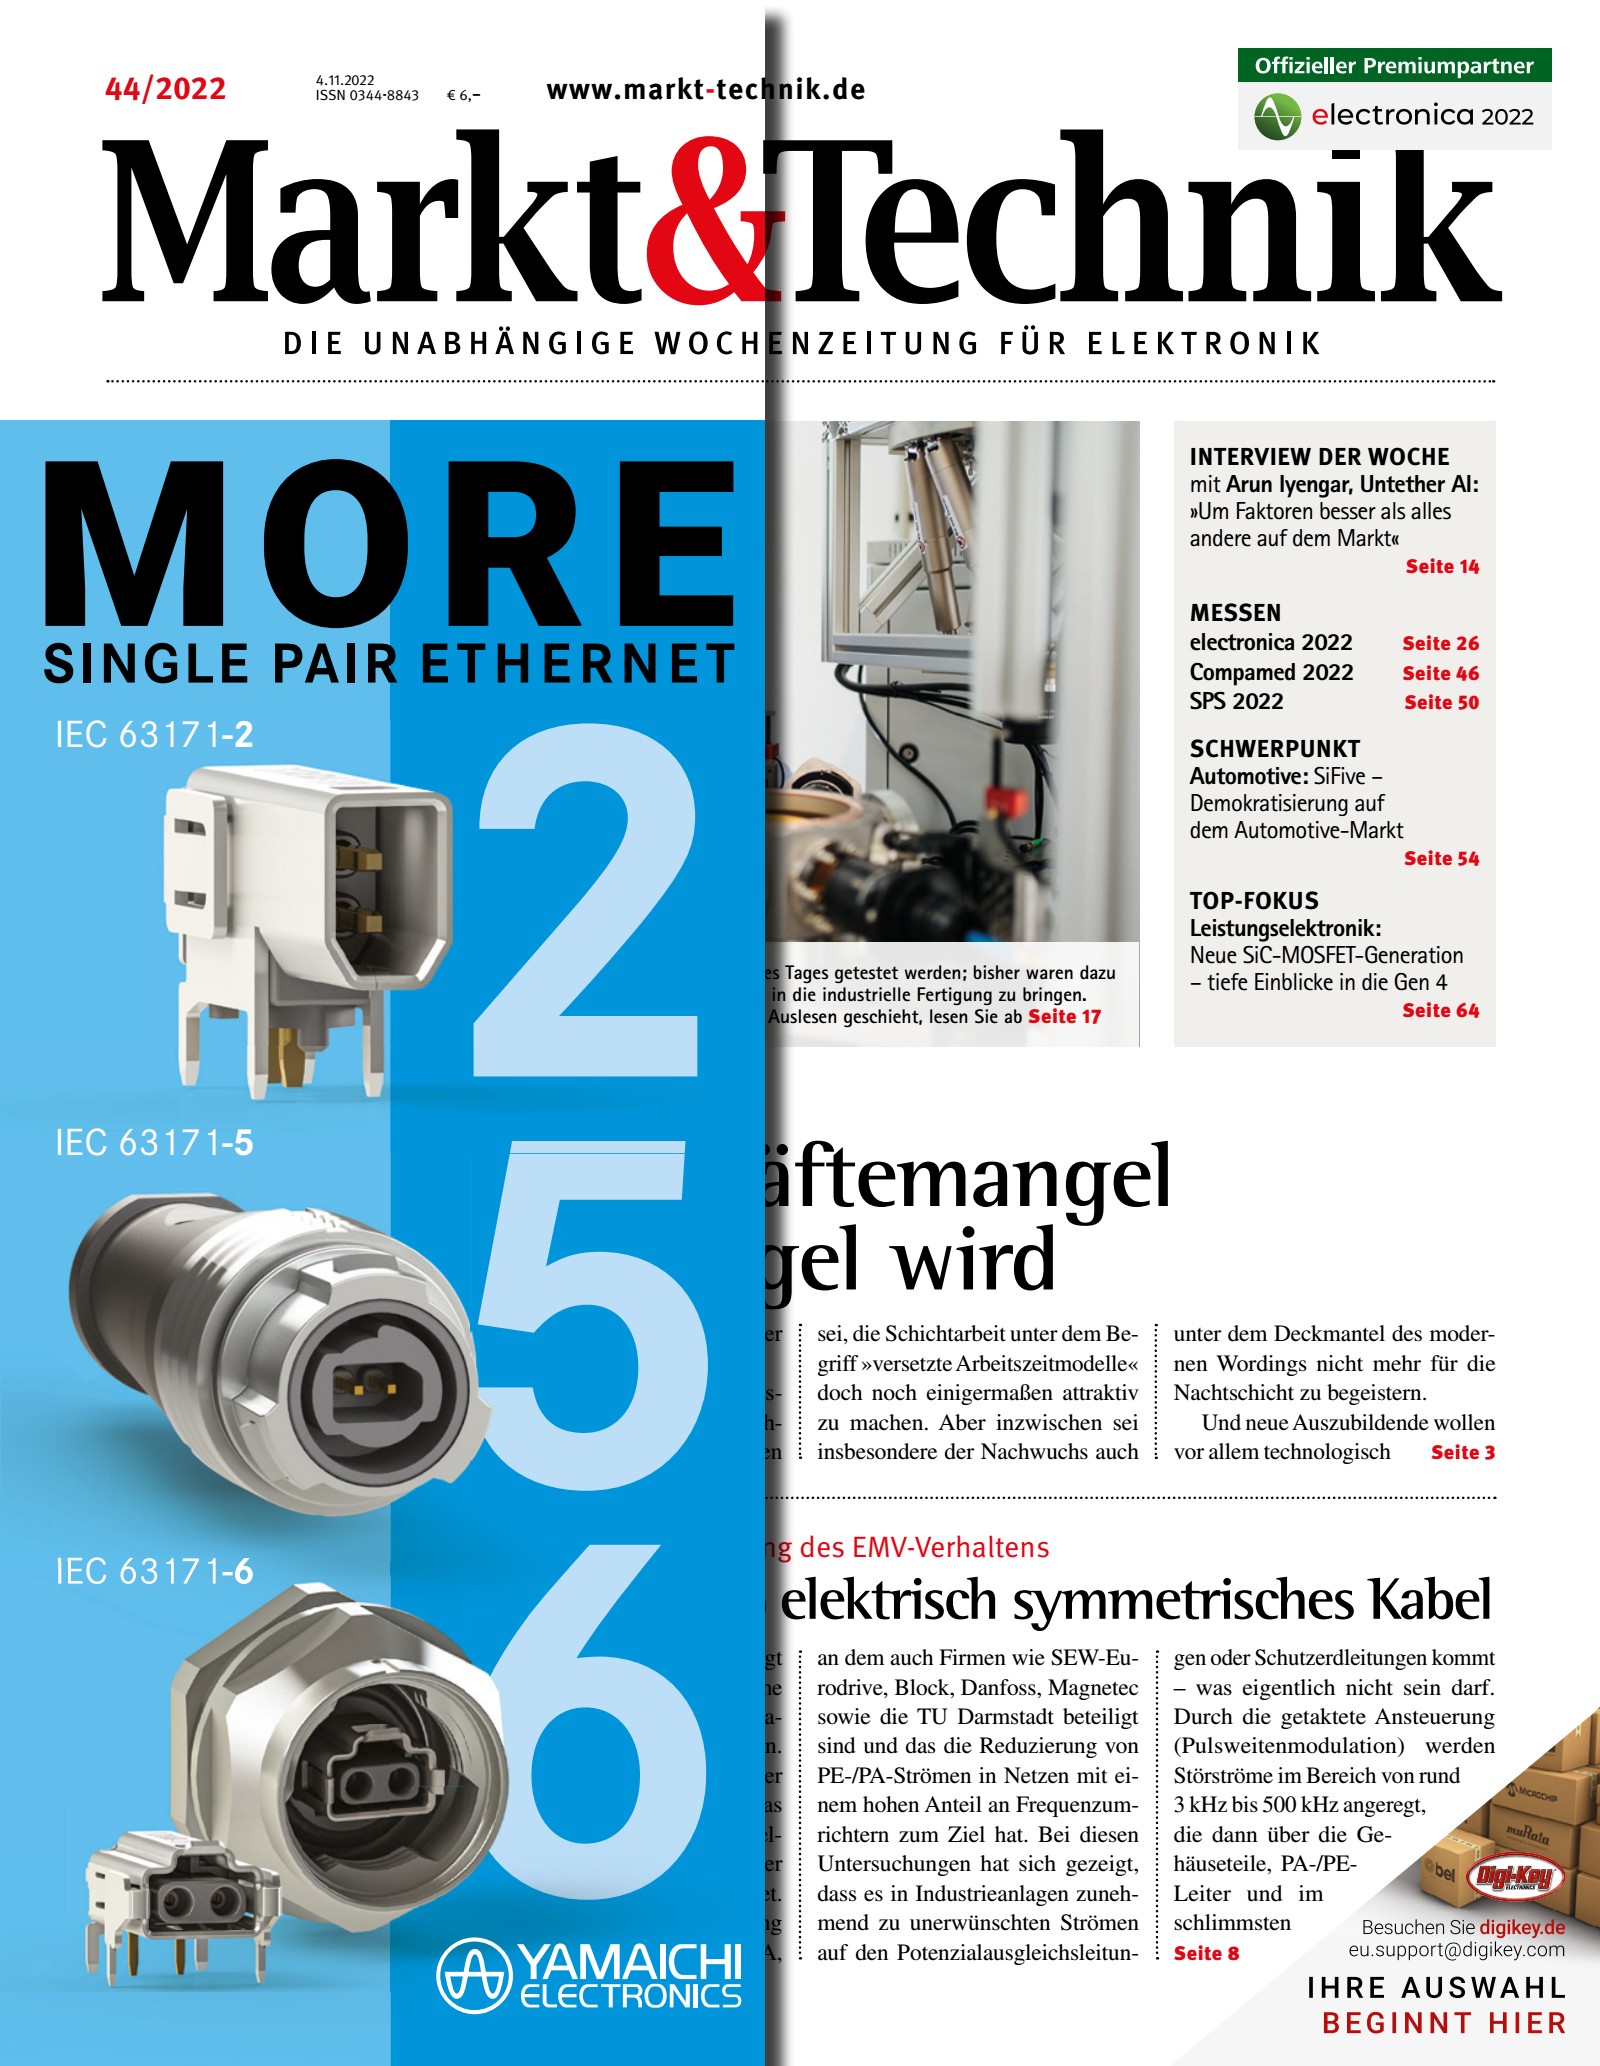 Markt&Technik 44/2022 Digital